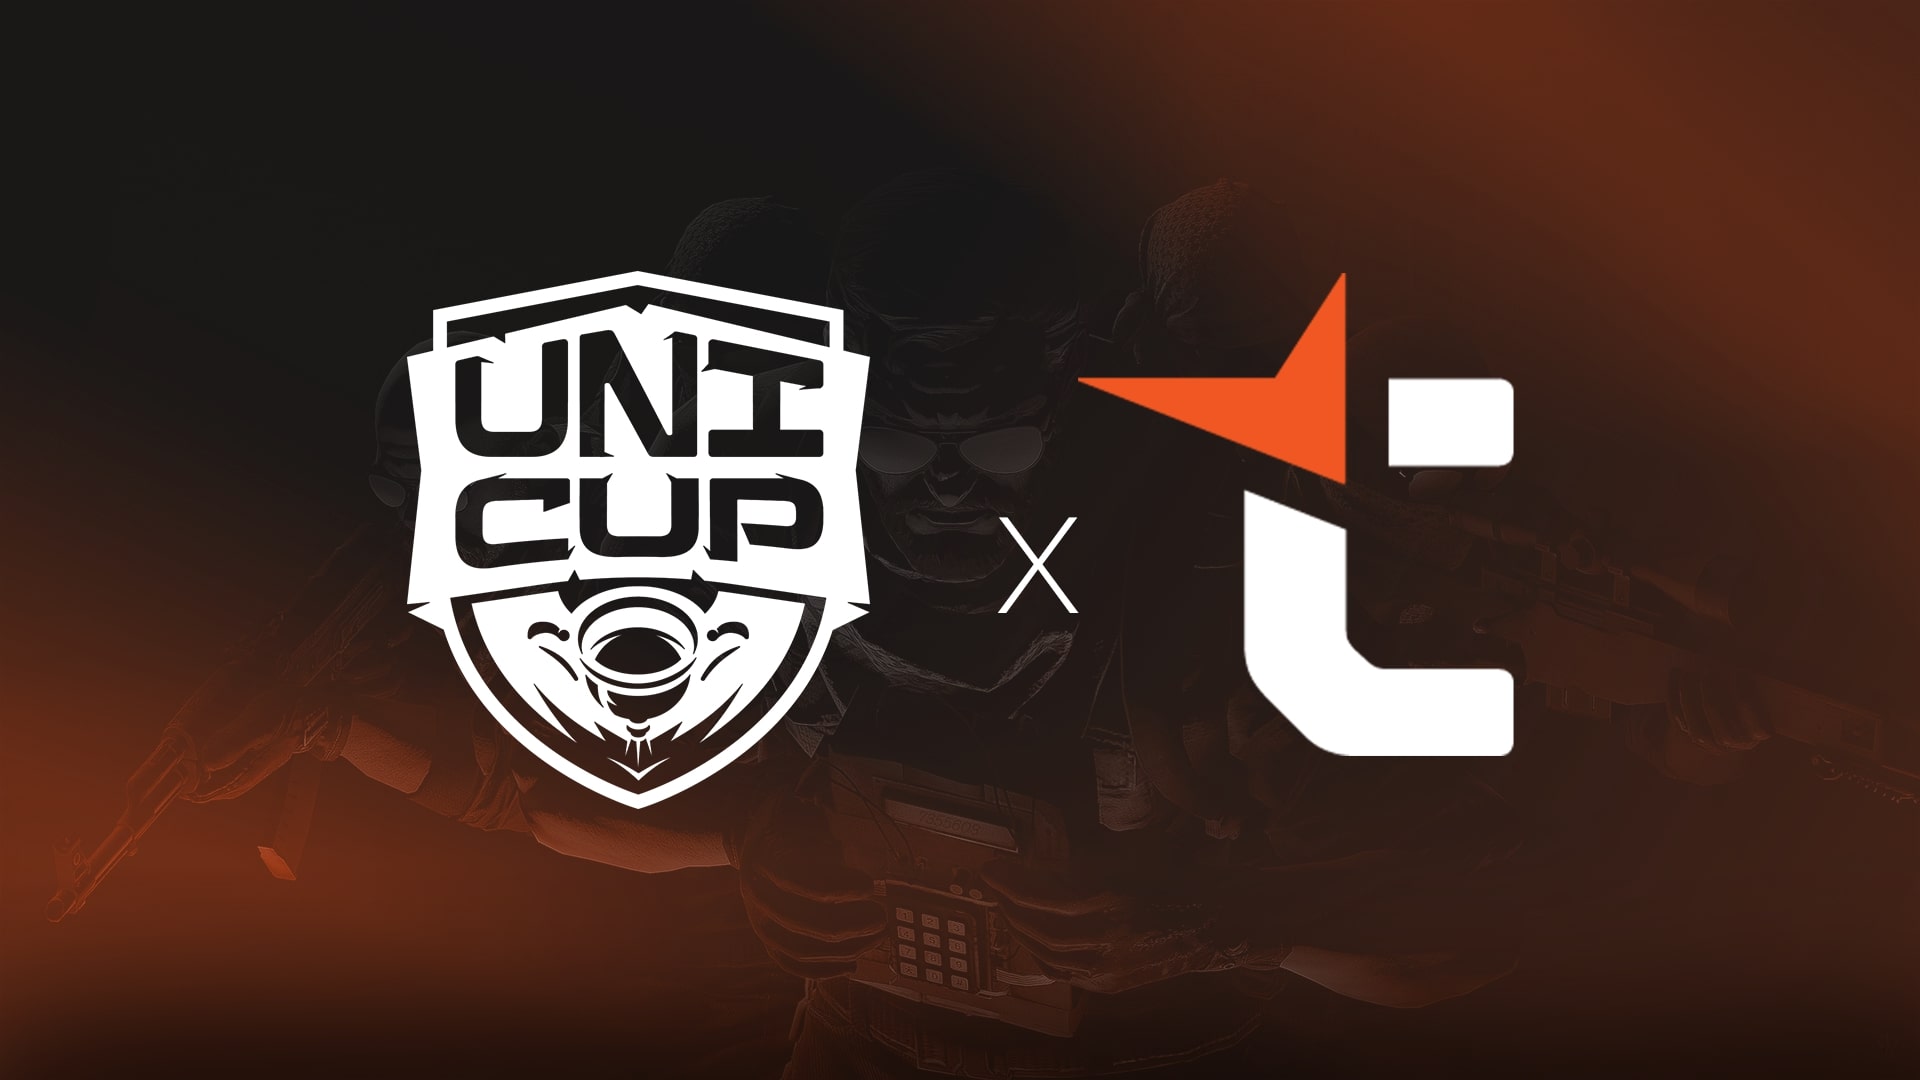 UniCup spolupracuje s FACEIT. Domácí studenti mohou reprezentovat svoji univerzitu v zahraničí